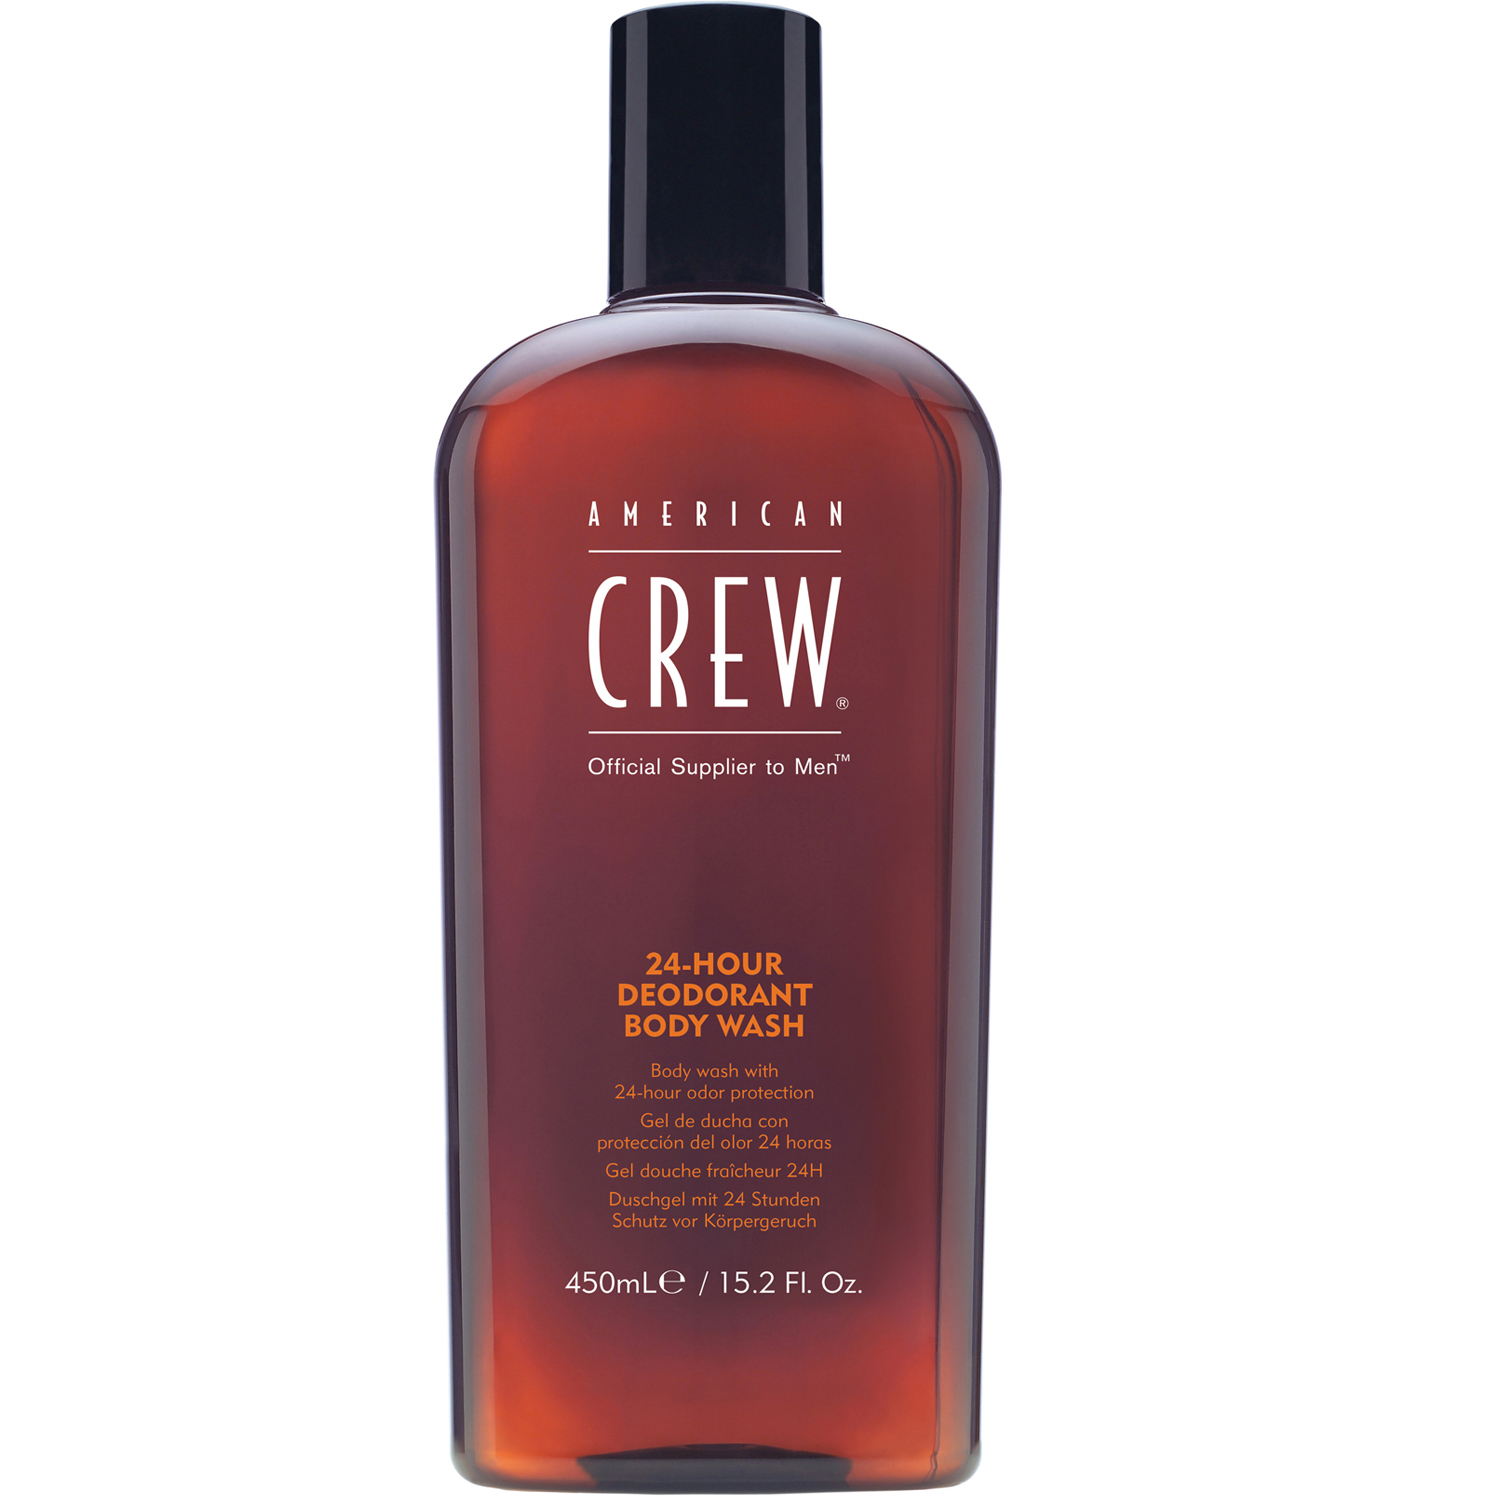 American Crew Гель для душа дезодорирующий 24-Hour Deodorant Body Wash, 450 мл (American Crew, Hair&Body)